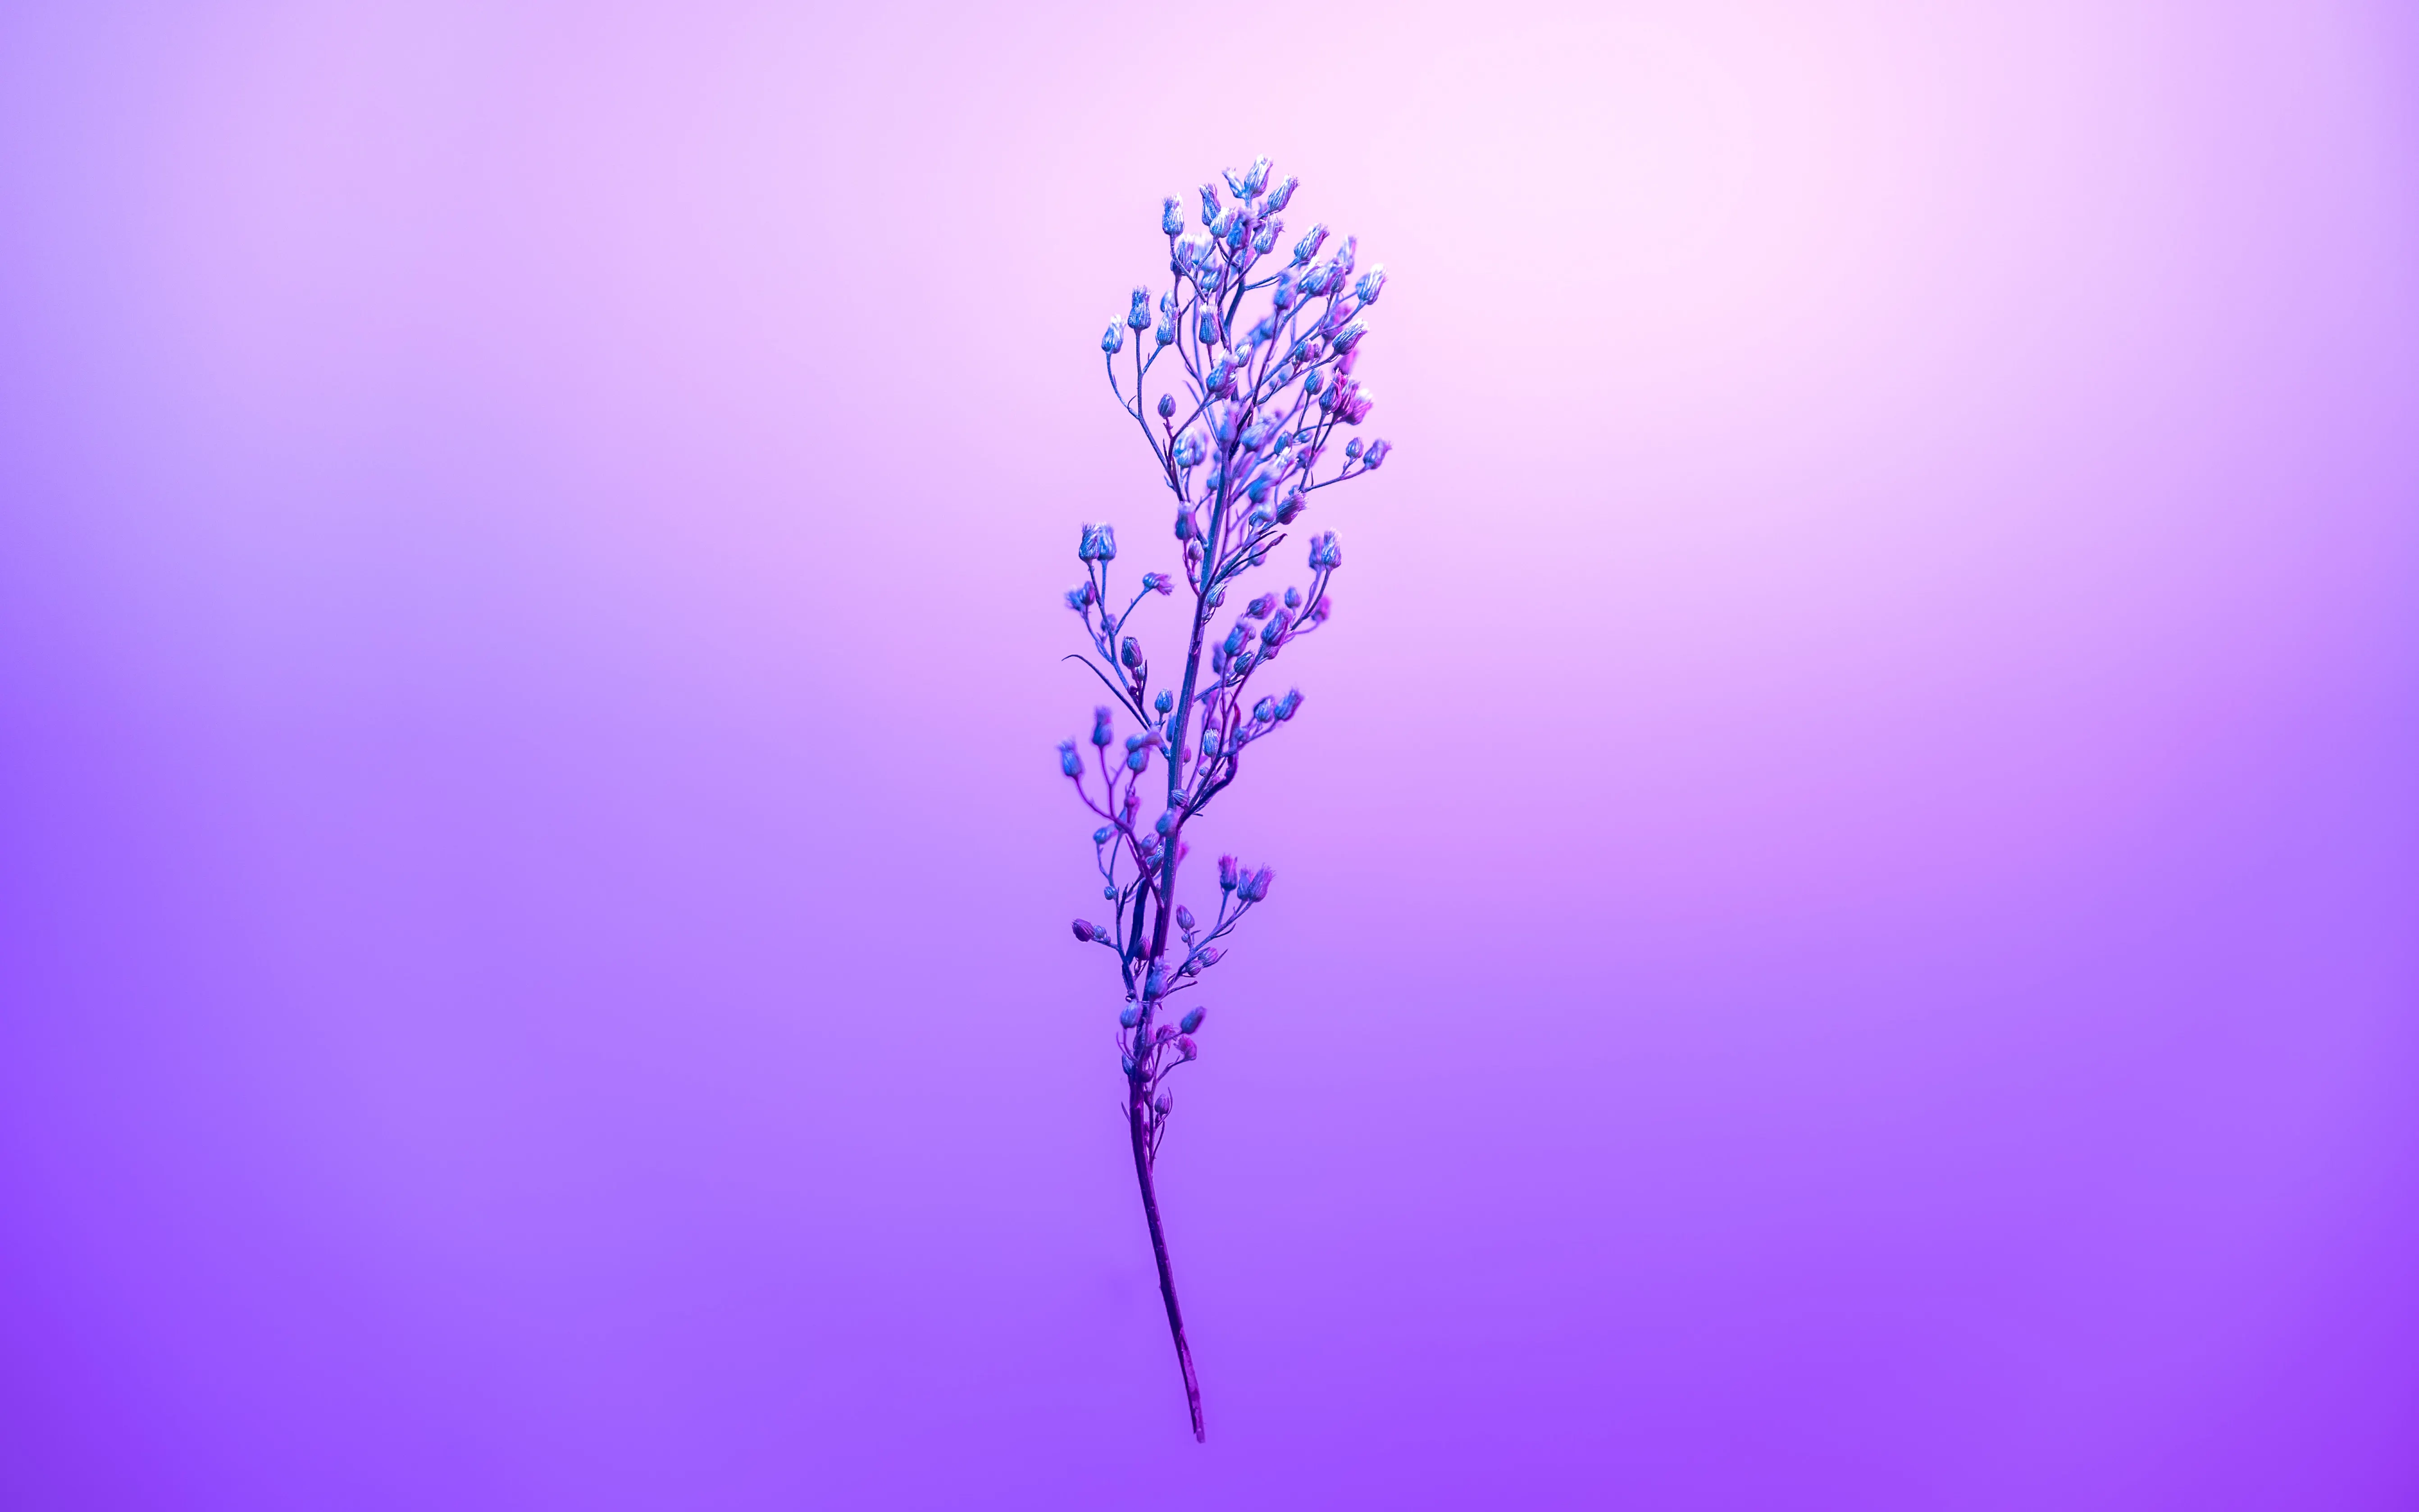 purple petal sky with stem 4k 1695888679